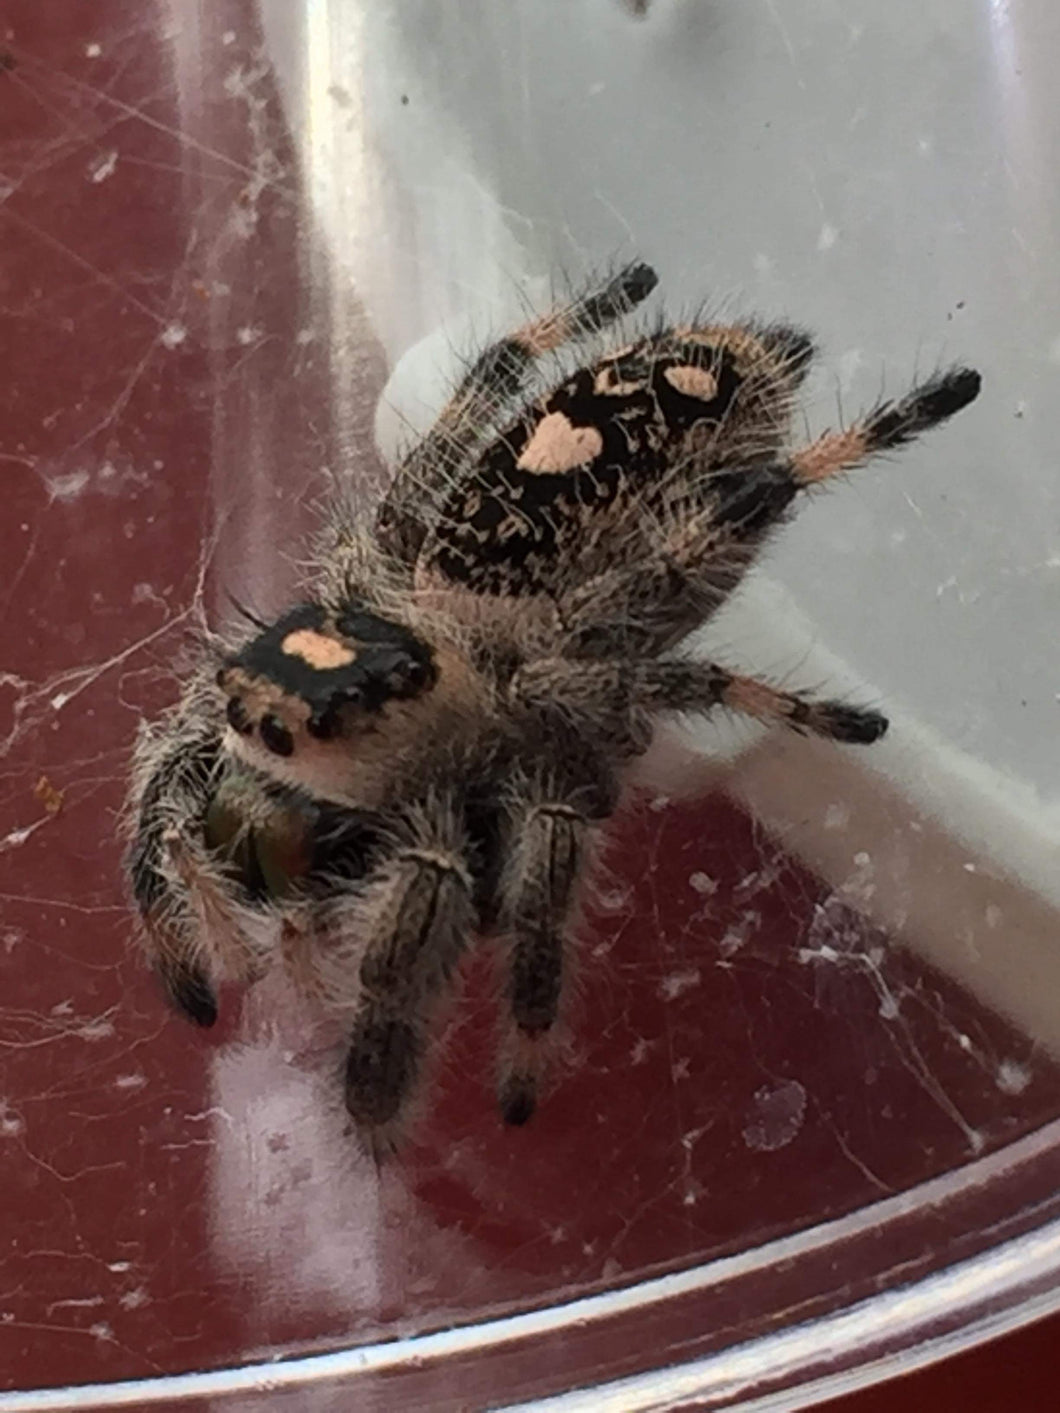 Phidippus regius (Regal Jumping Spider)